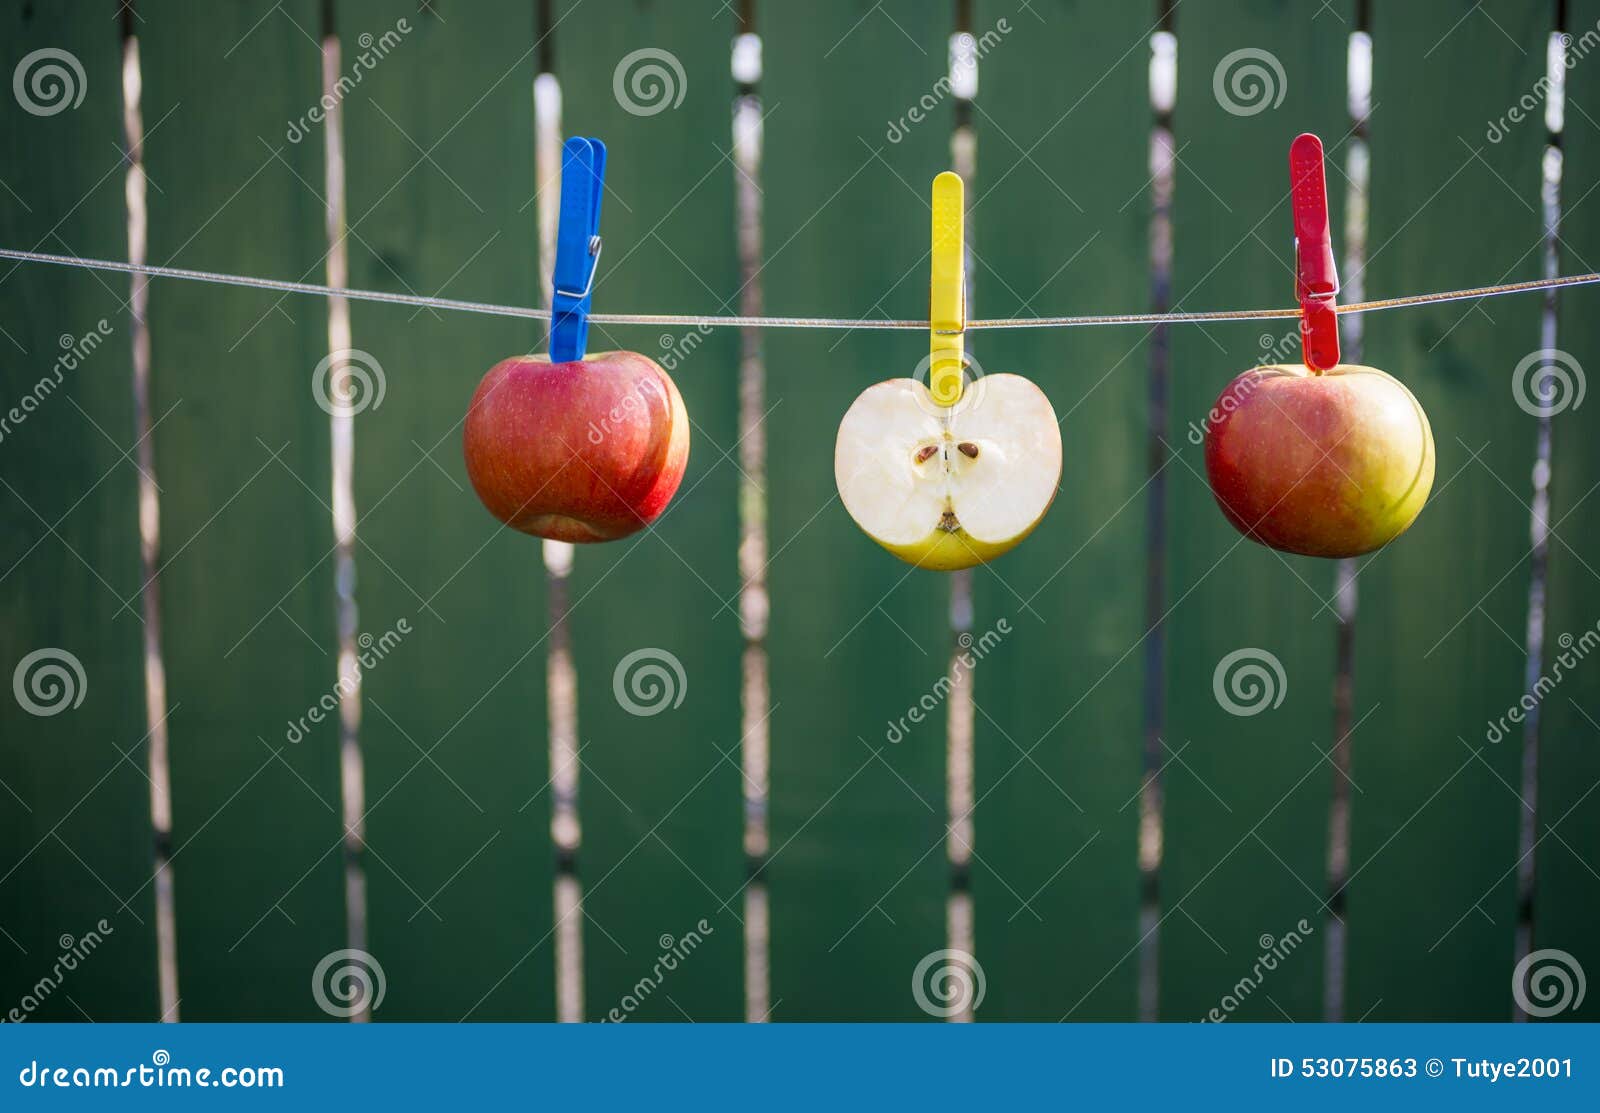 Часть повесить. Яблоки на веревке. Яблоко на веревочке. Конкурс с яблоками на веревке. Яблоки для выставки на веревке.